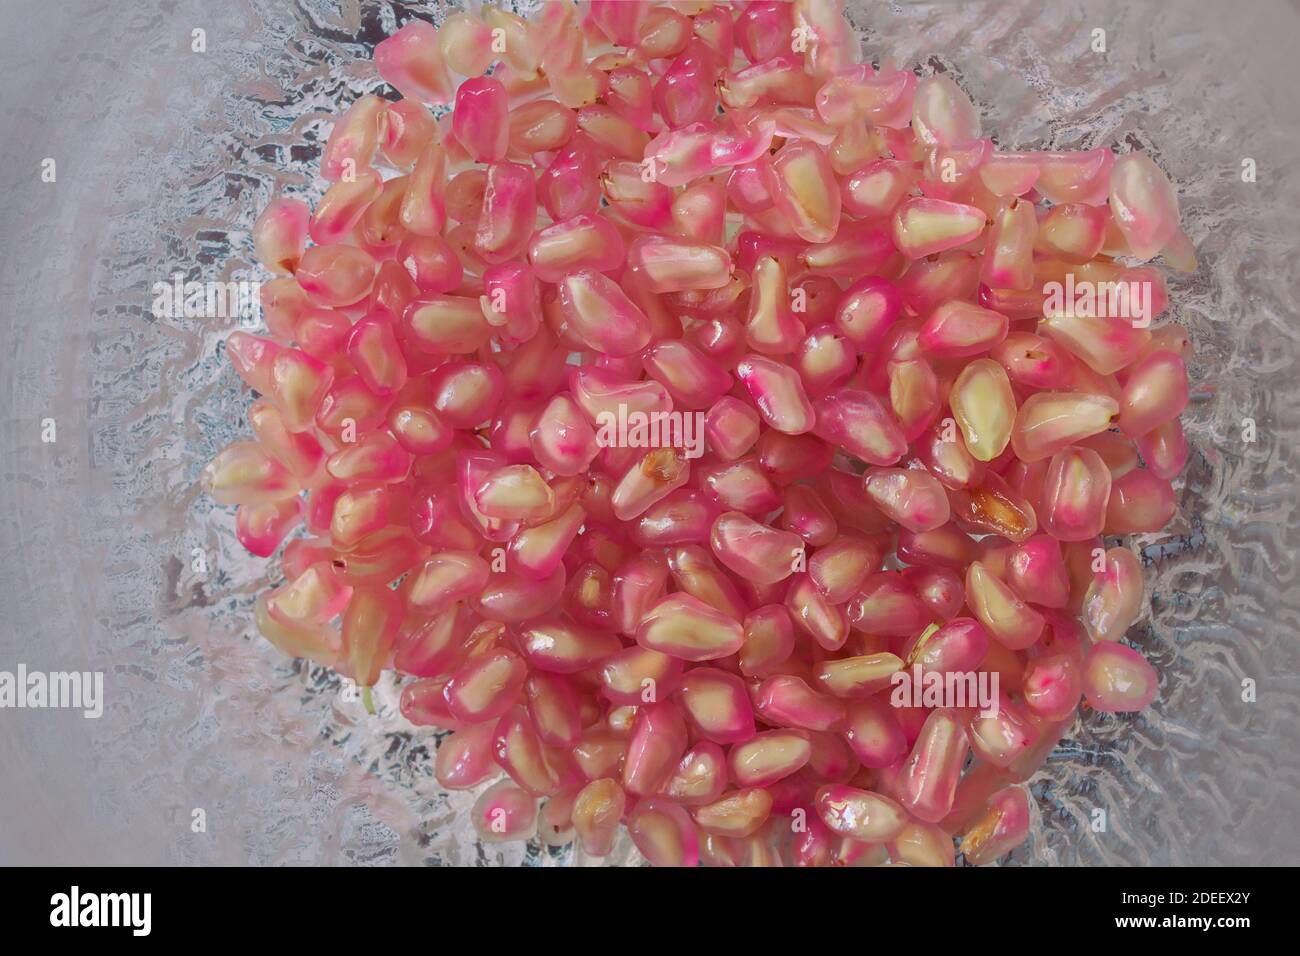 Un sacco di semi di melograno in un elegante recipiente di vetro mobile. Cibo naturale e sano. Foto Stock